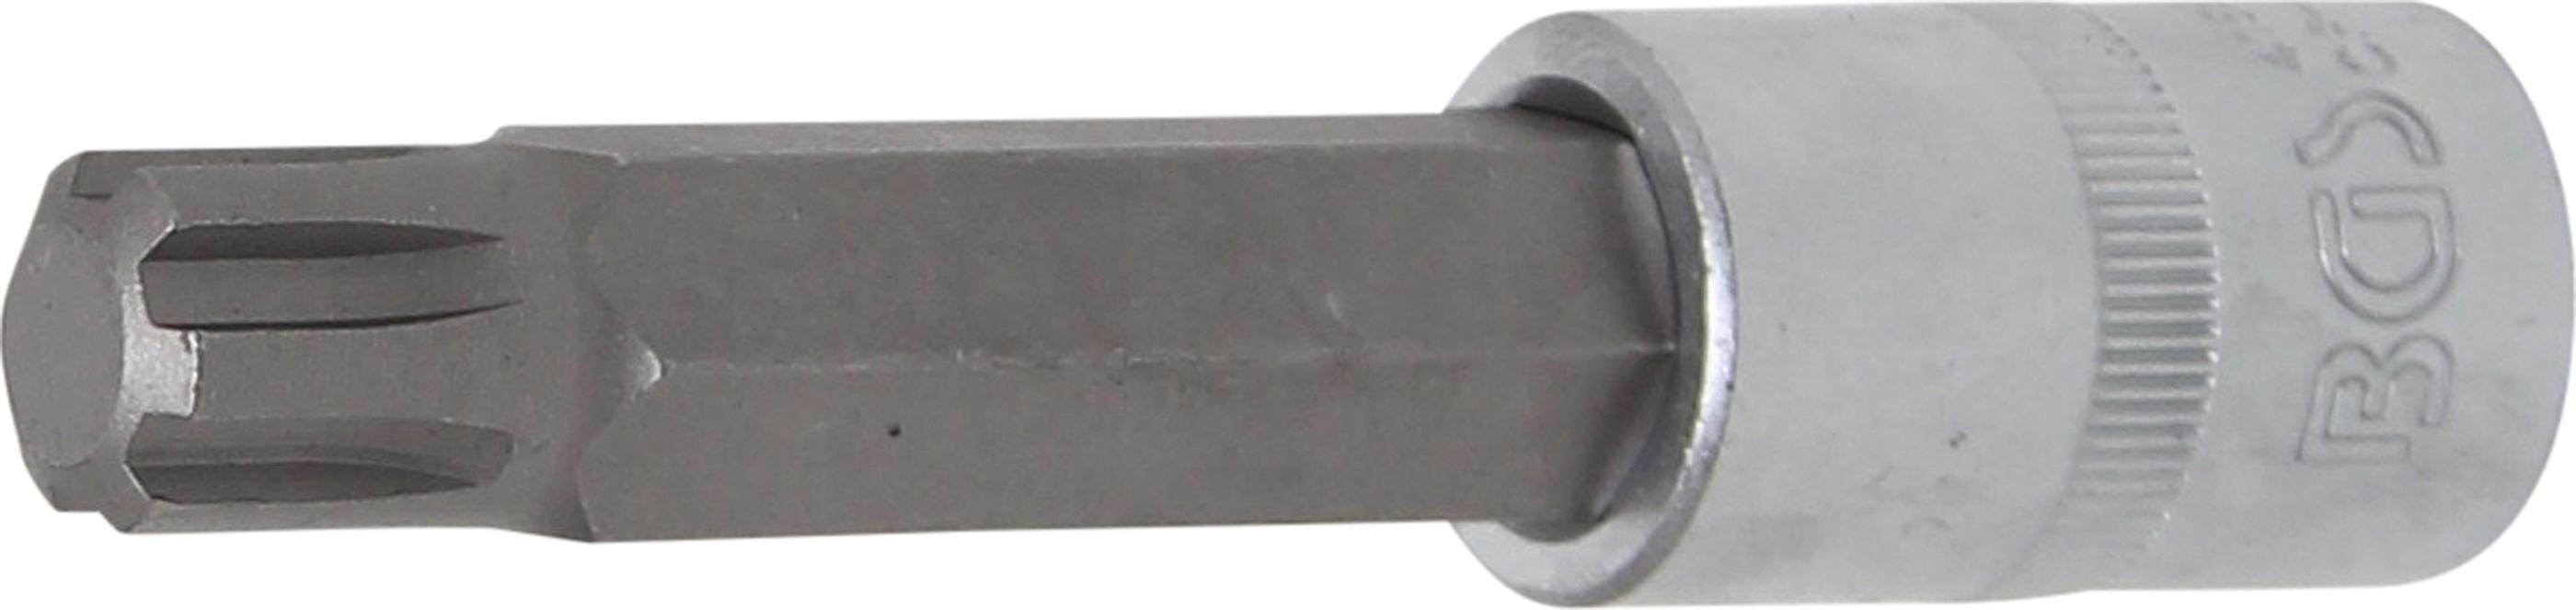 BGS technic Bit-Schraubendreher Bit-Einsatz, Länge 100 mm, Antrieb Innenvierkant 12,5 mm (1/2), Keil-Profil (für RIBE) M14